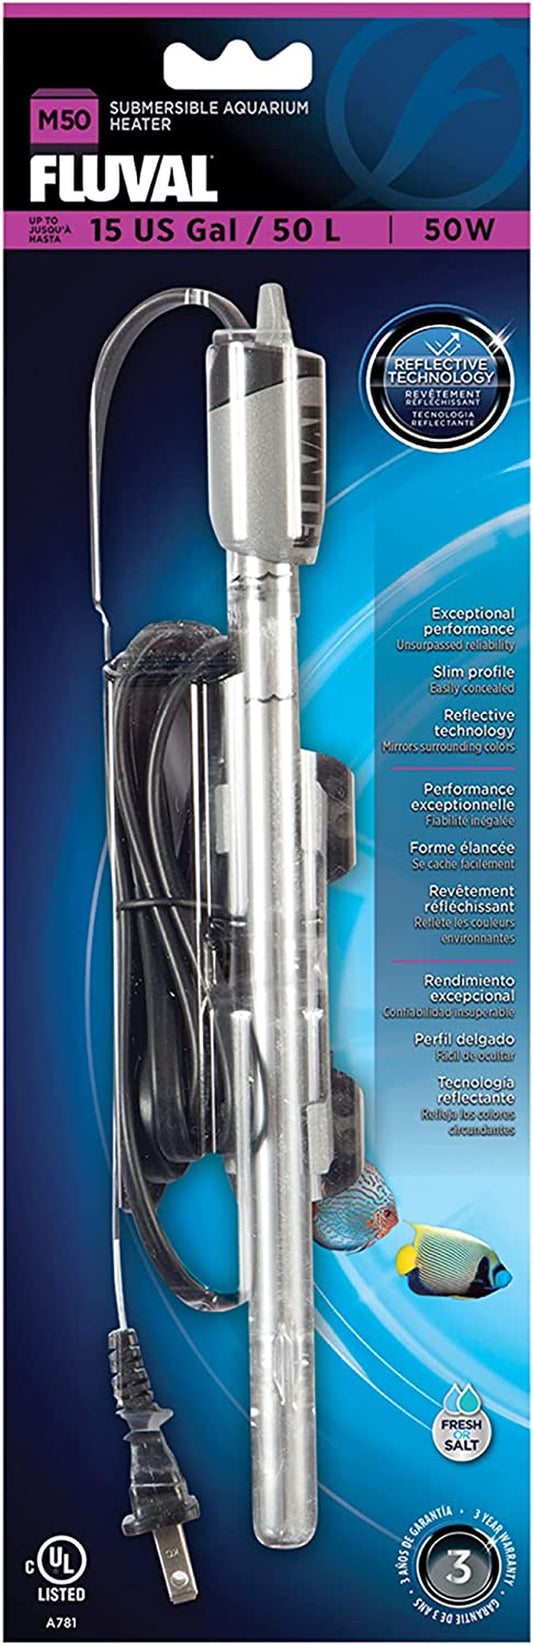 M50 Ultra-Slim Submersible Aquarium Heater – 50W Underwater Heater for Aquariums up to 15 Gal.